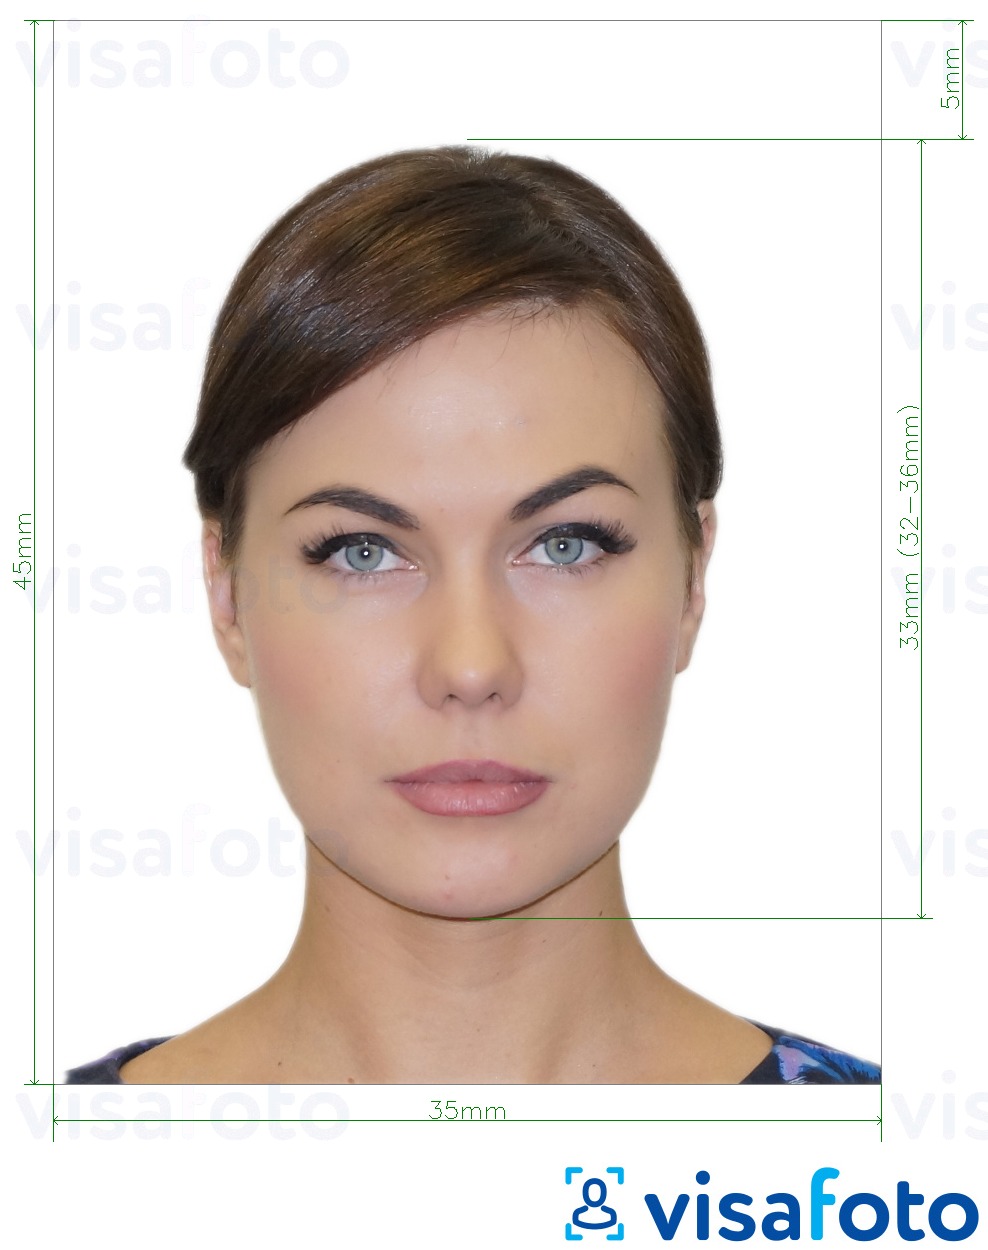 Příklad fotografie Ruské ID ventilátoru  pixelů s přesnou specifikací velikosti